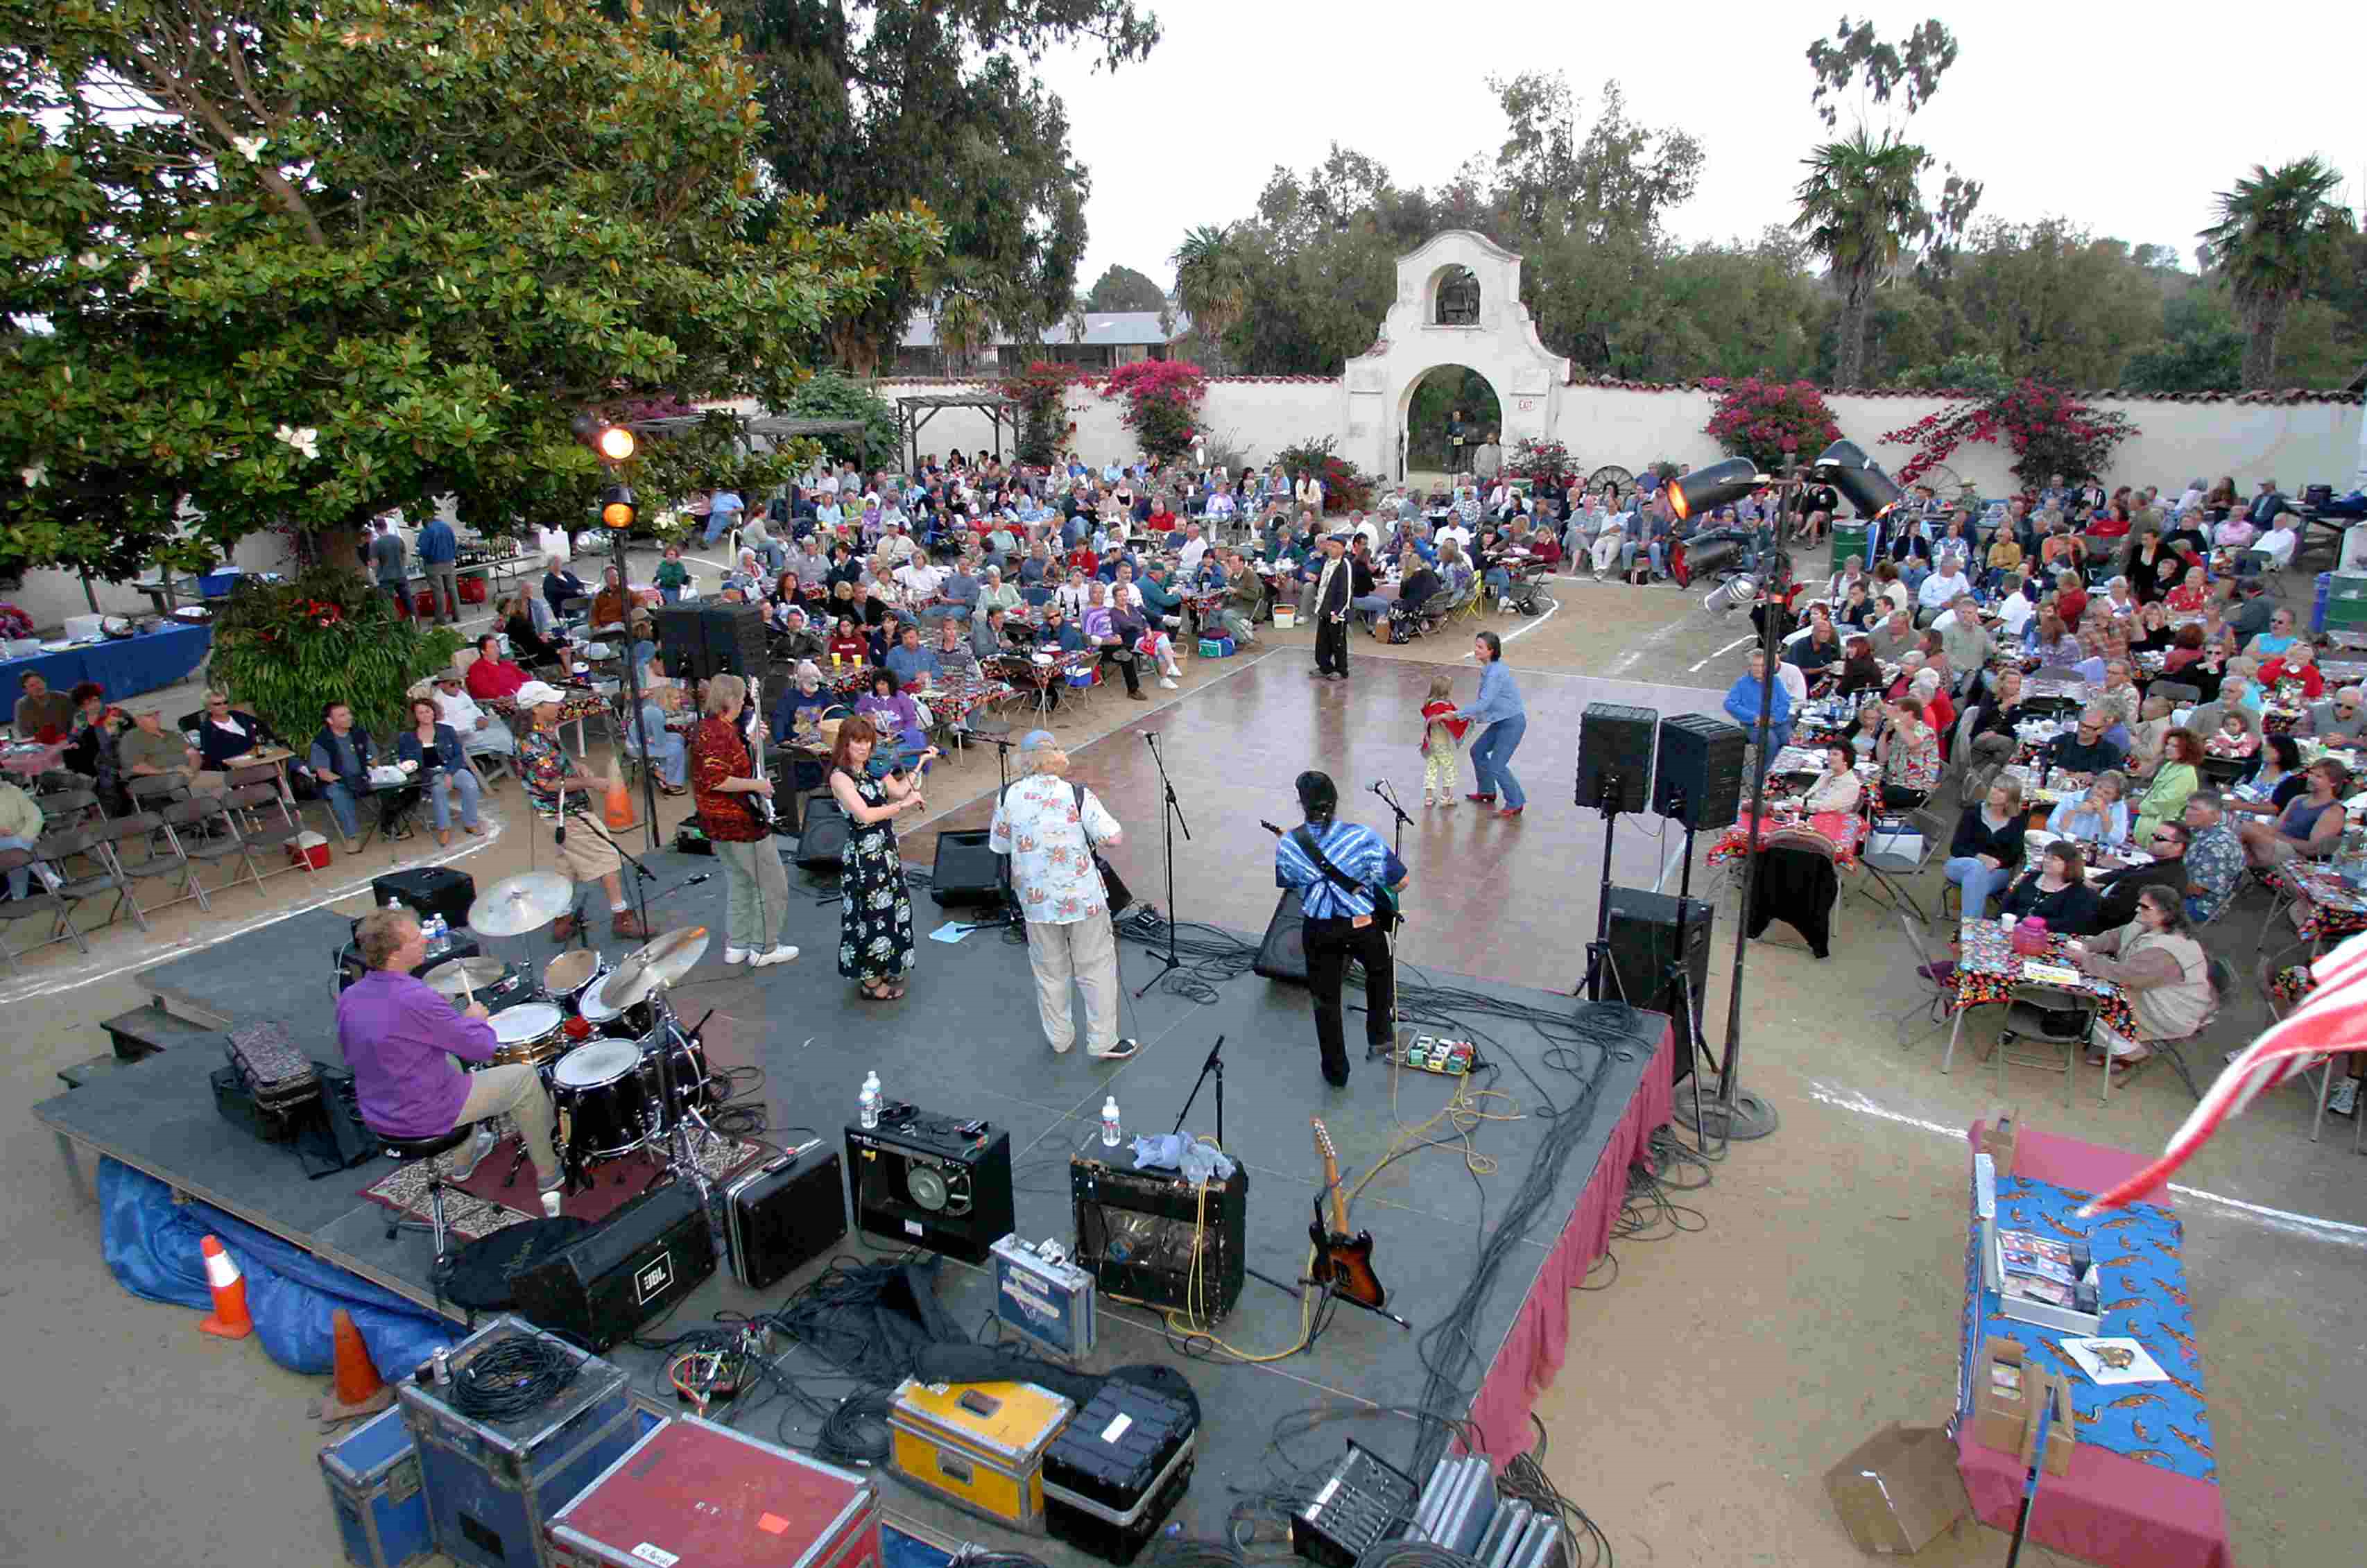 Enjoying a concert at the Olivas Adobe in Ventura, California